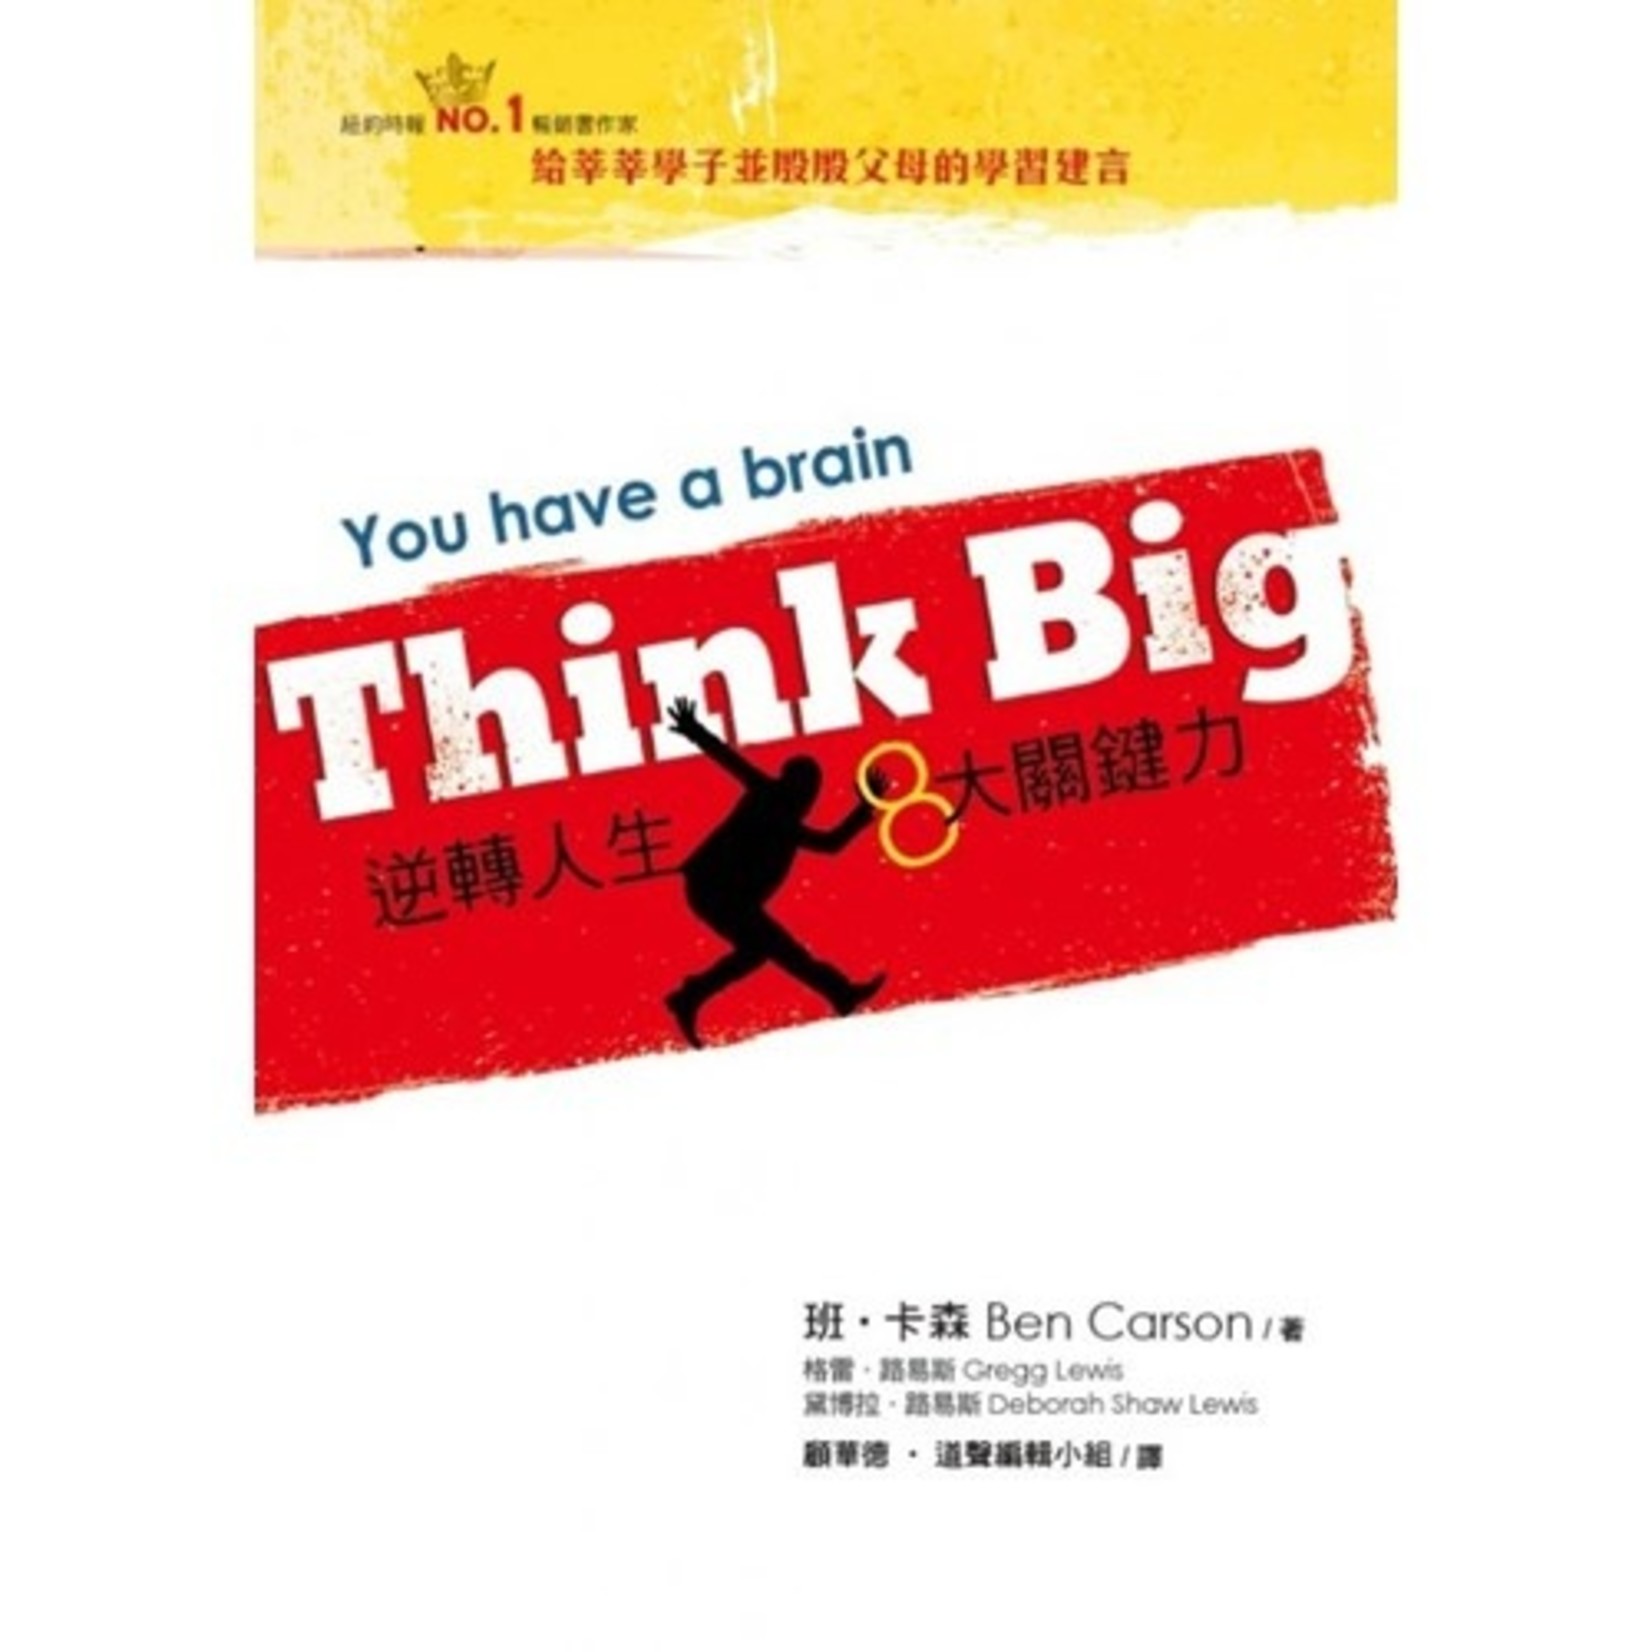 道聲 Taosheng Taiwan Think Big：逆轉人生8大關鍵力 You have a brain